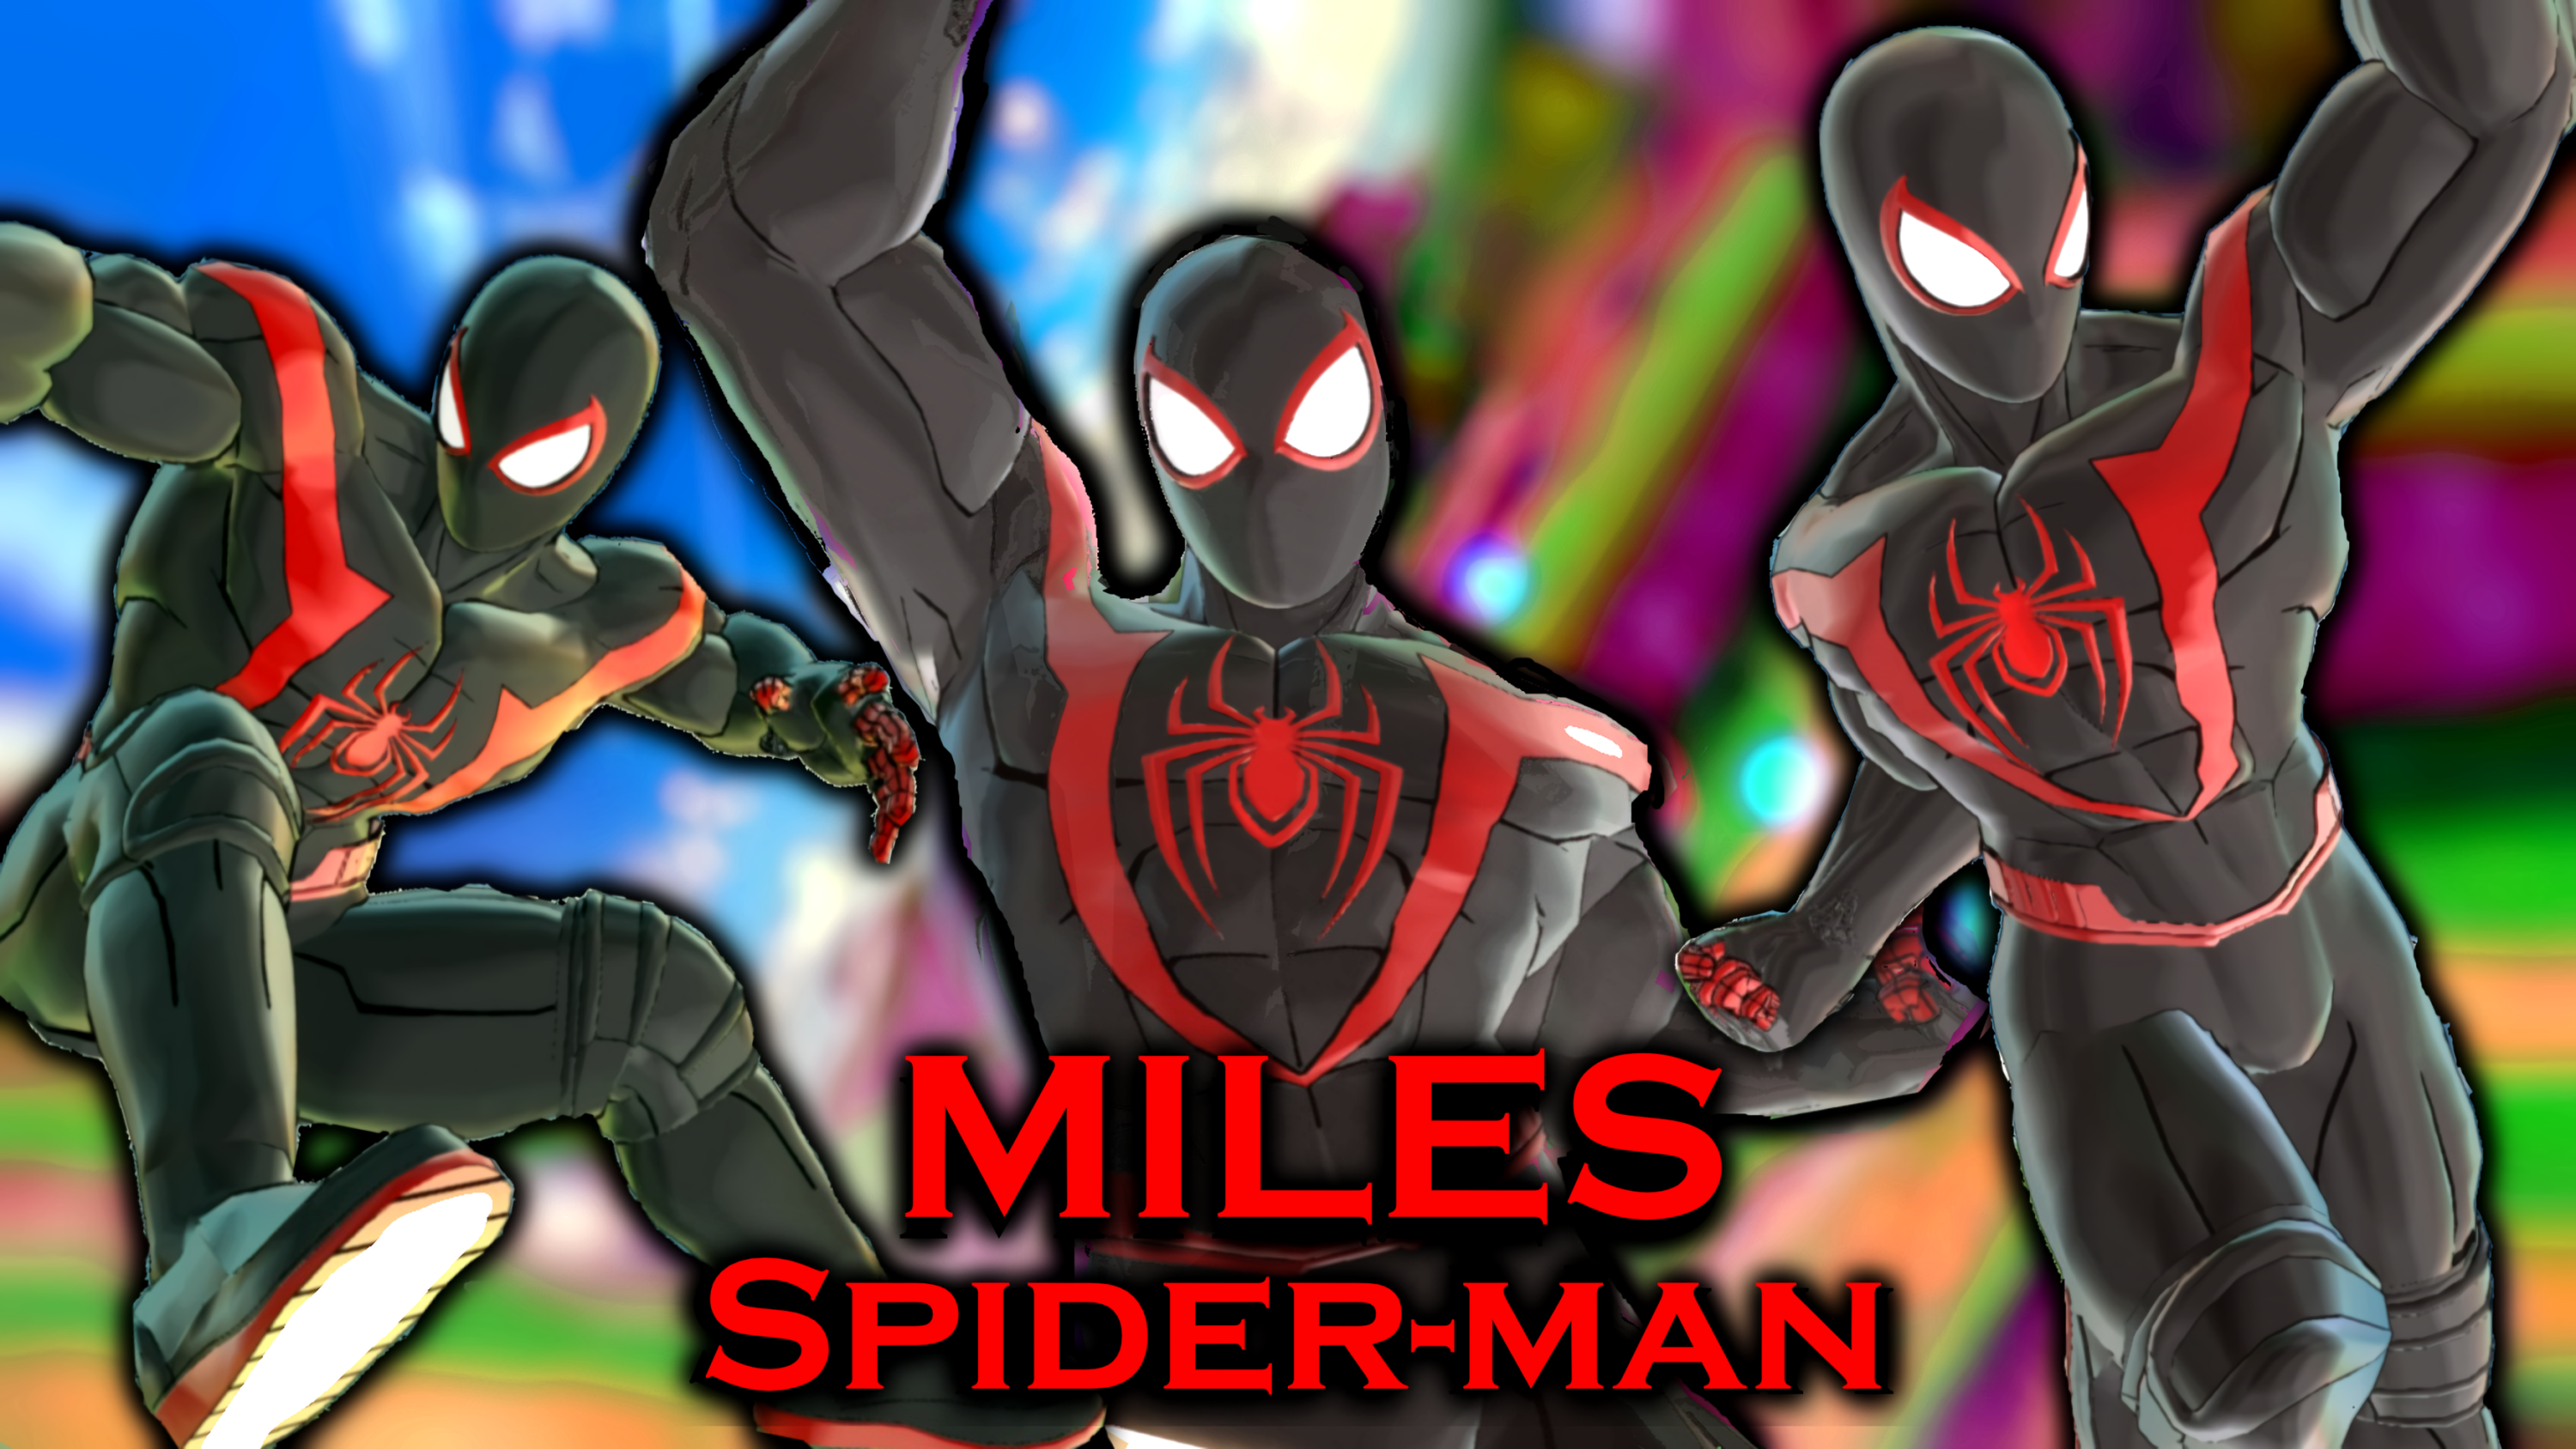 CAC Spider-Man Miles Morales Costume